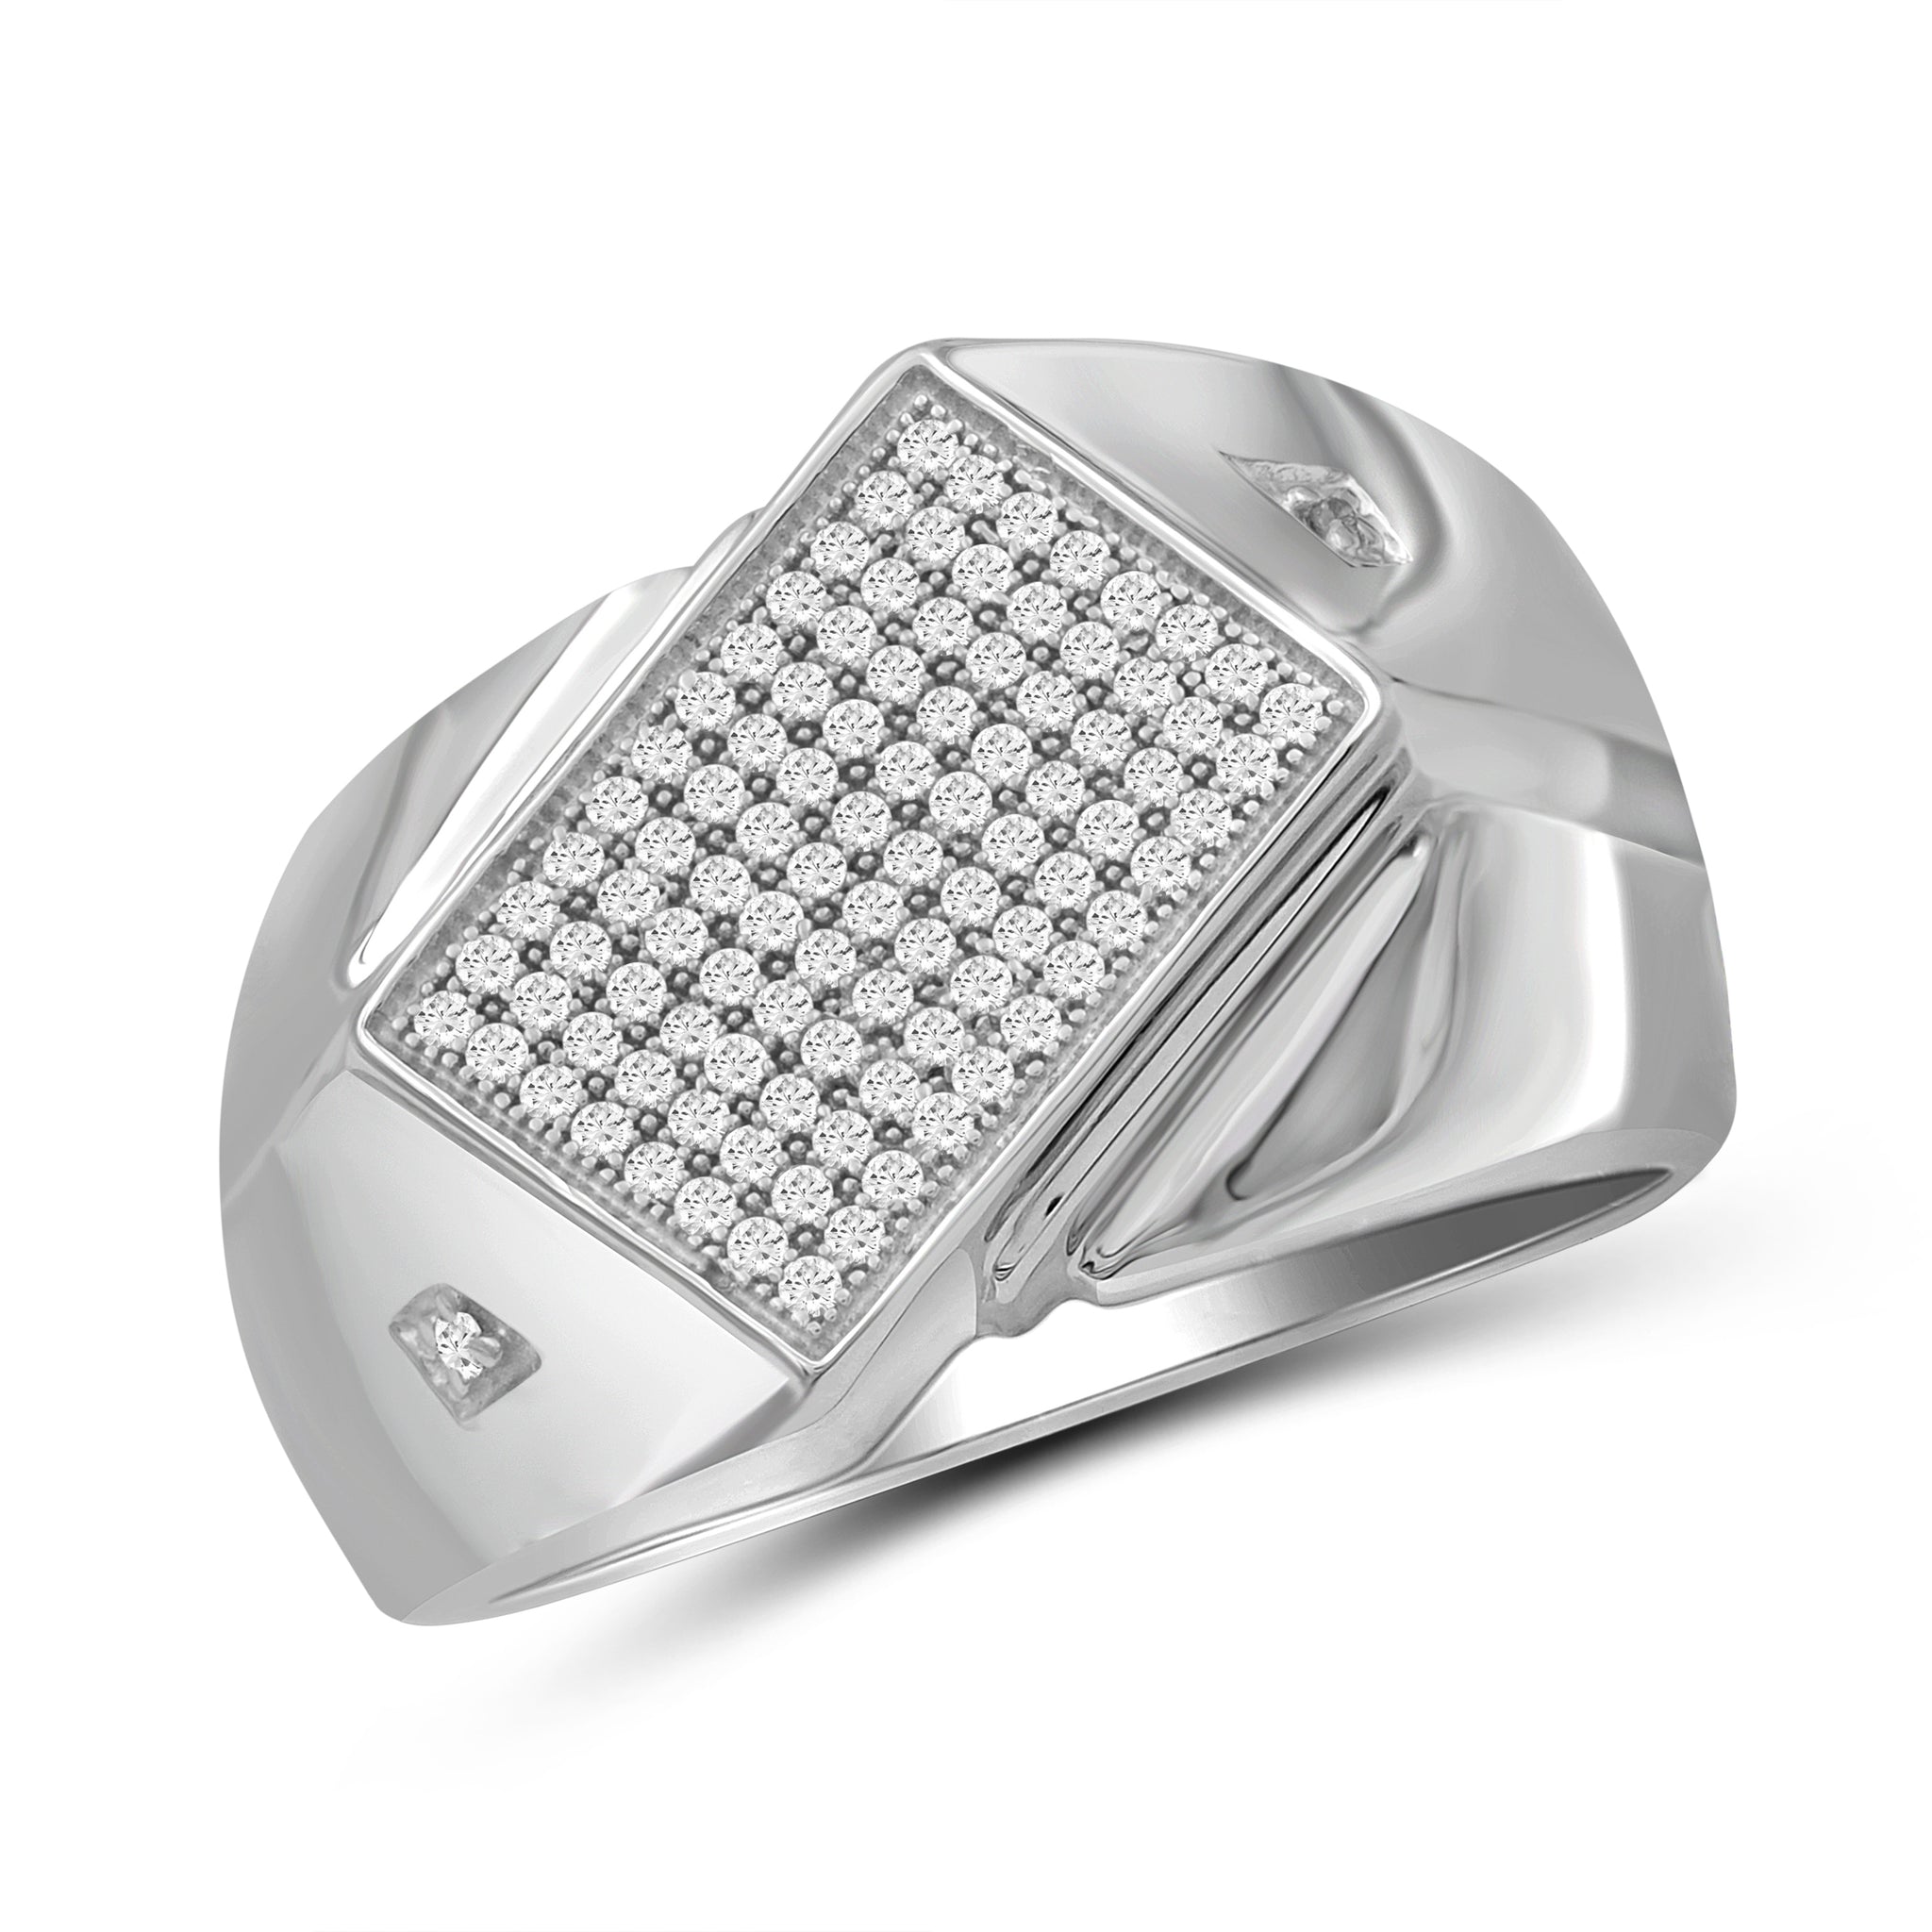 Jewelnova 1/3 Carat T.W. White Diamond 10k White Gold Men's Ring